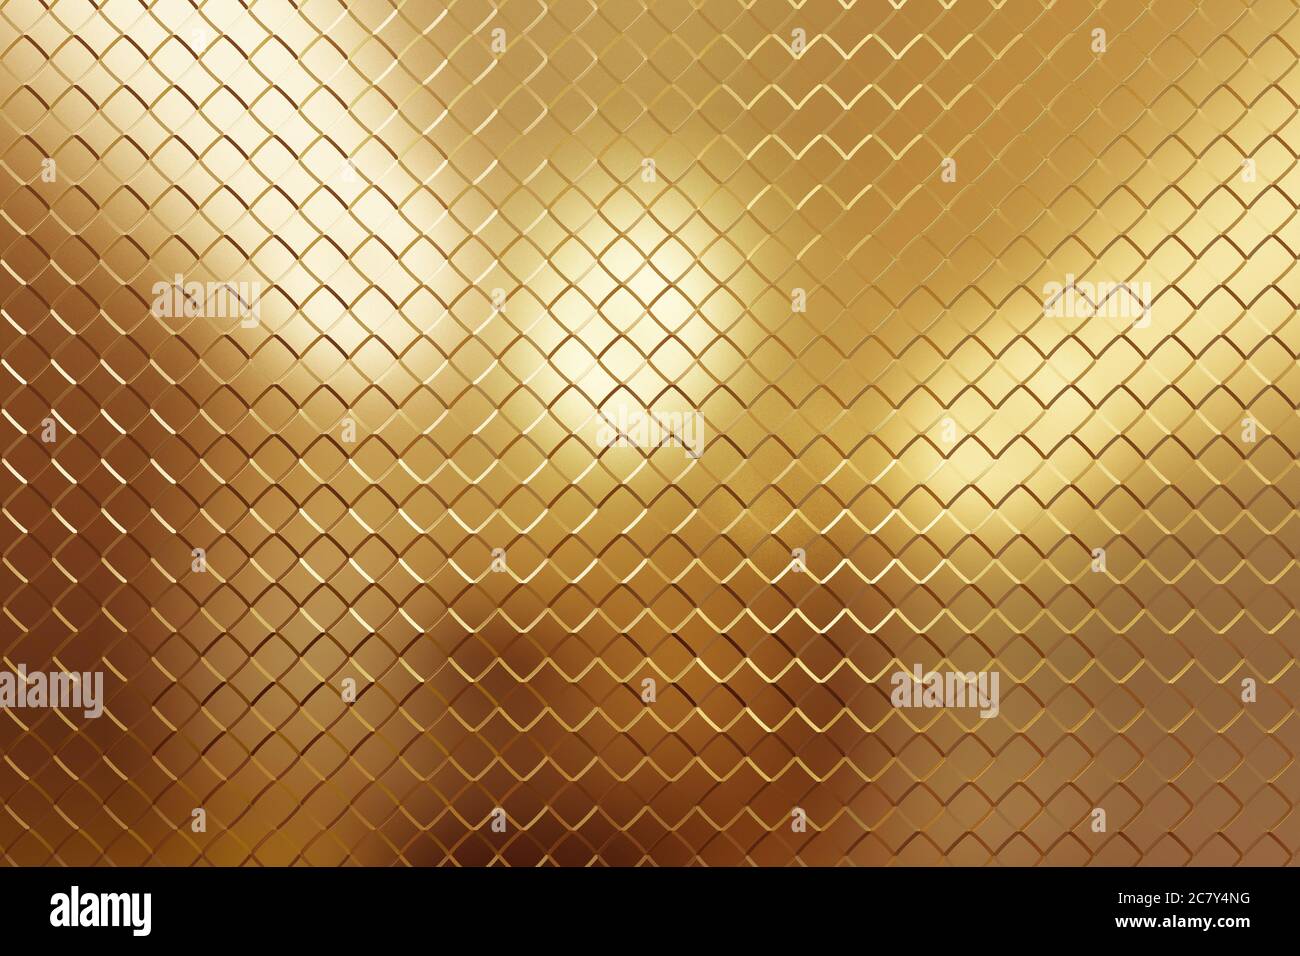 Motivo giallo dorato, forme astratte simmetriche e geometriche su sfondo testurizzato.Illustrazione 3d. Foto Stock